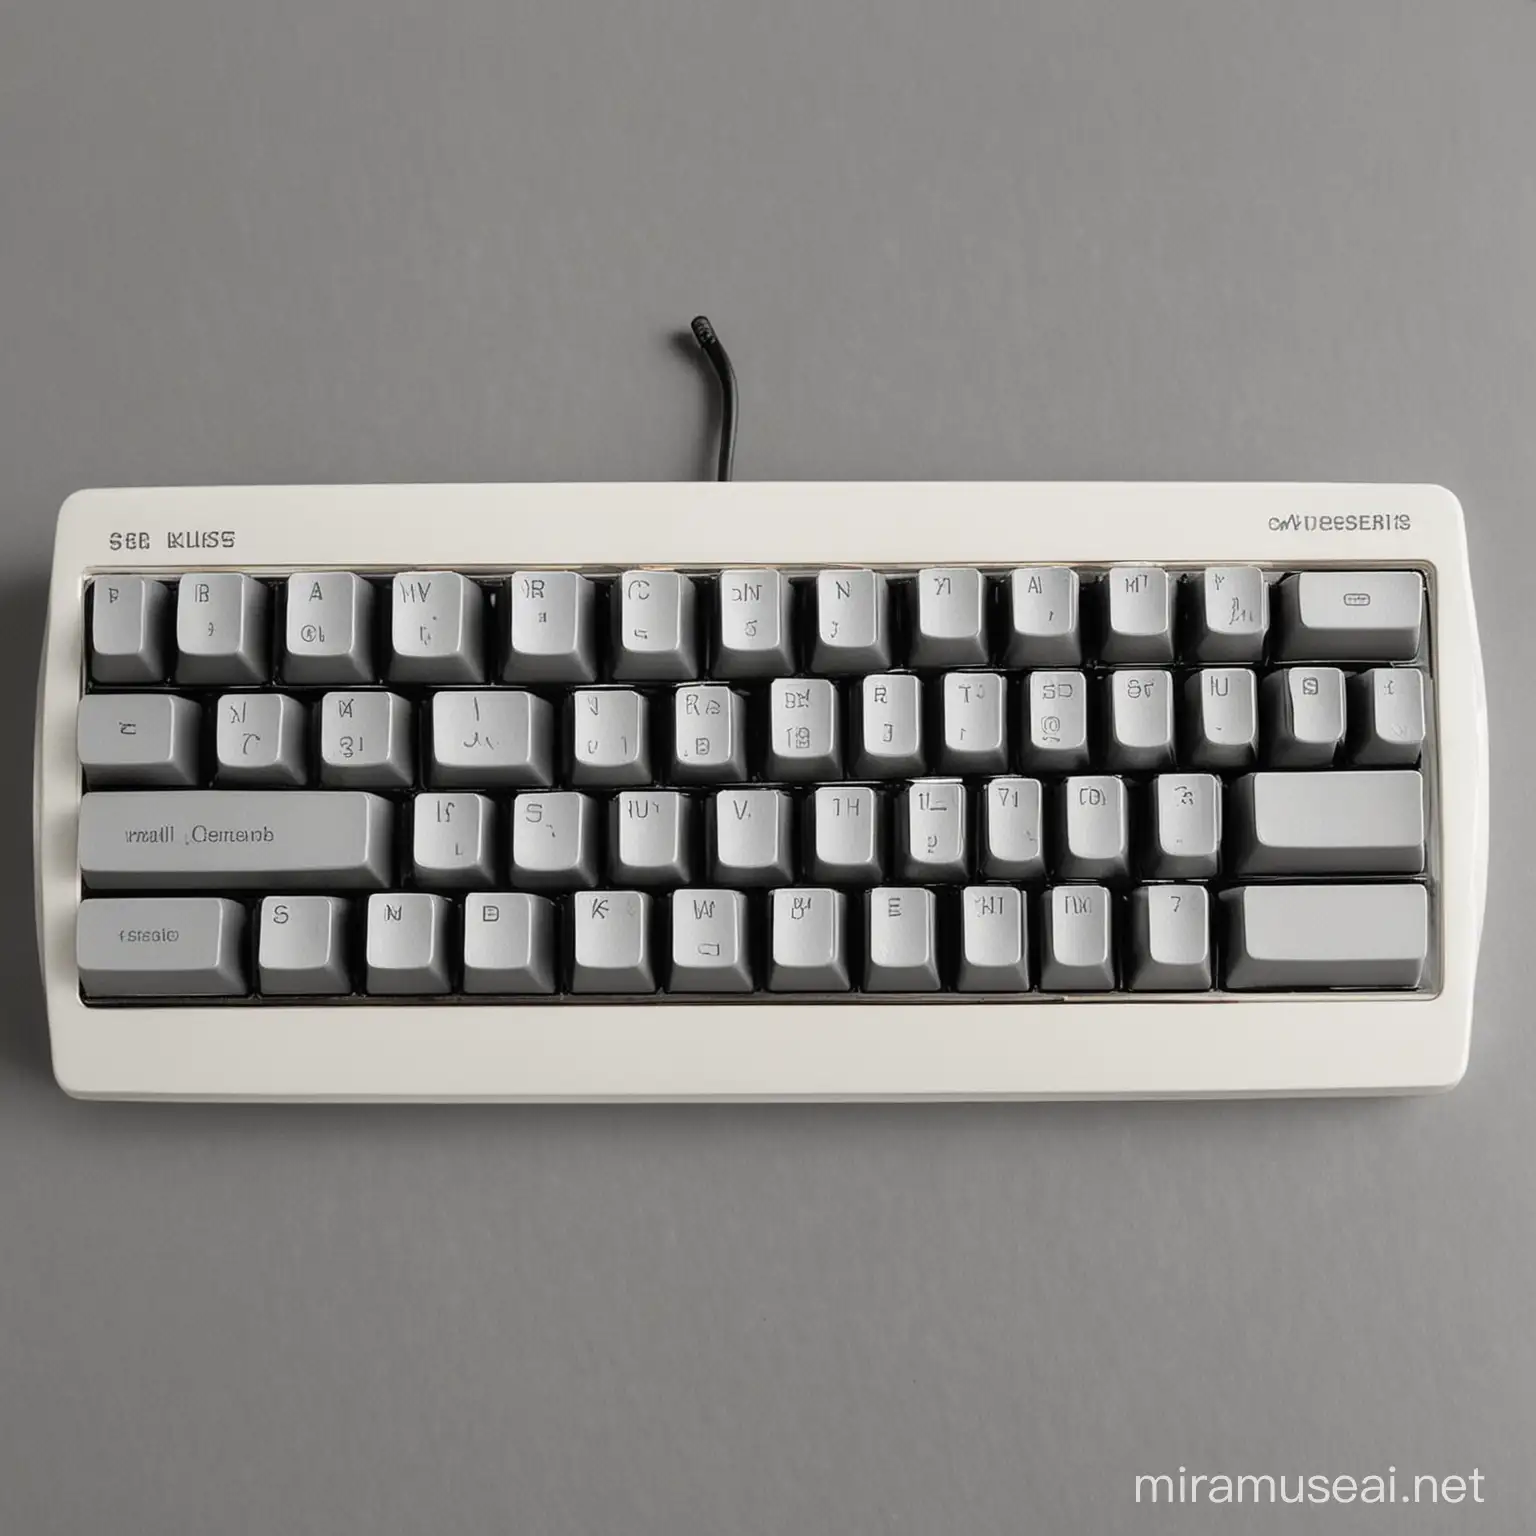   small keyboard
